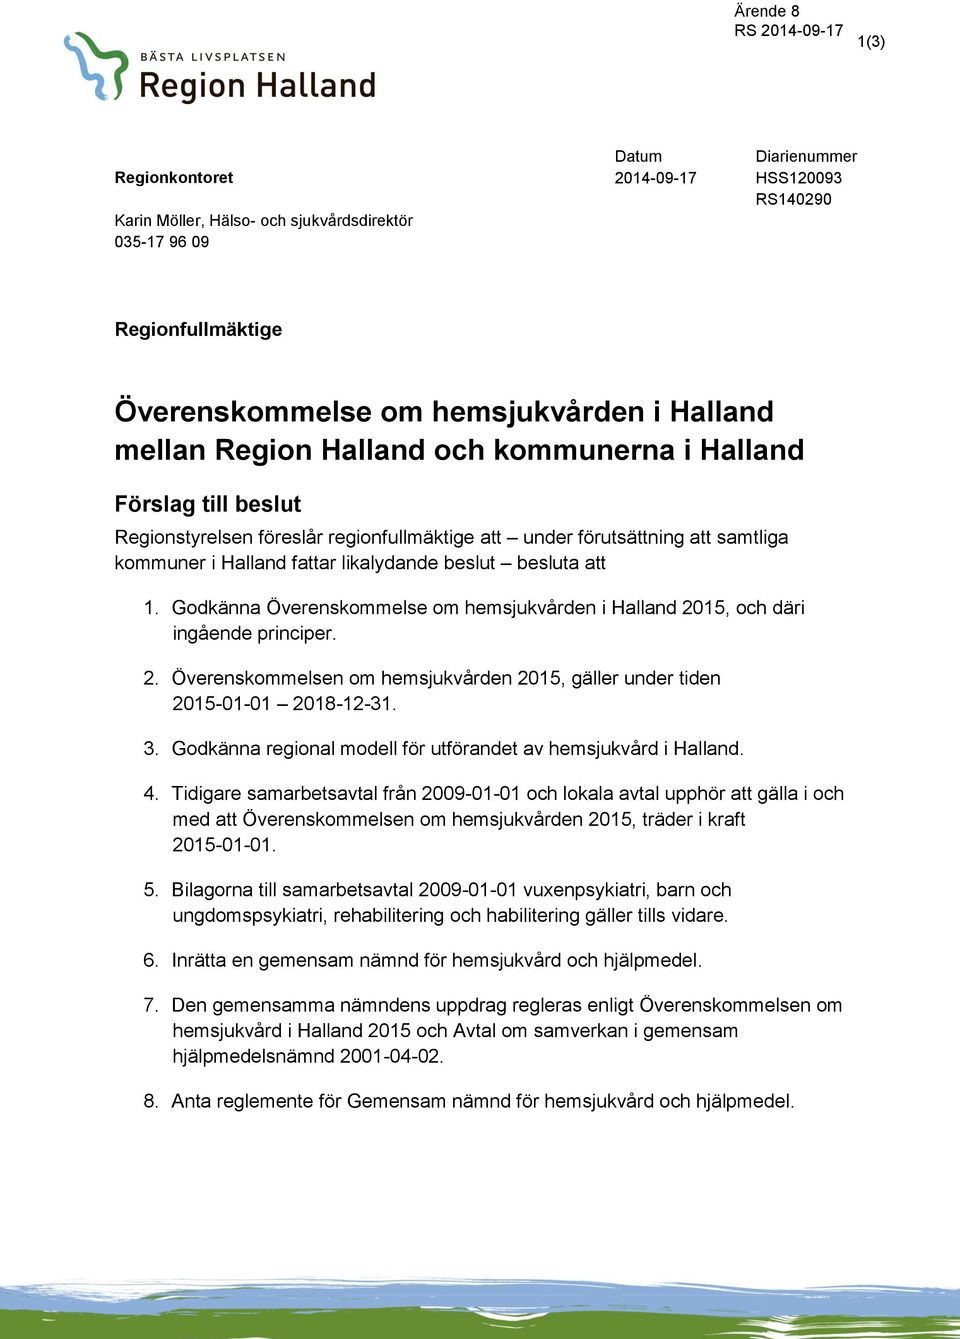 Godkänna Överenskommelse om hemsjukvården i Halland 2015, och däri ingående principer. 2. Överenskommelsen om hemsjukvården 2015, gäller under tiden 2015-01-01 2018-12-31. 3.